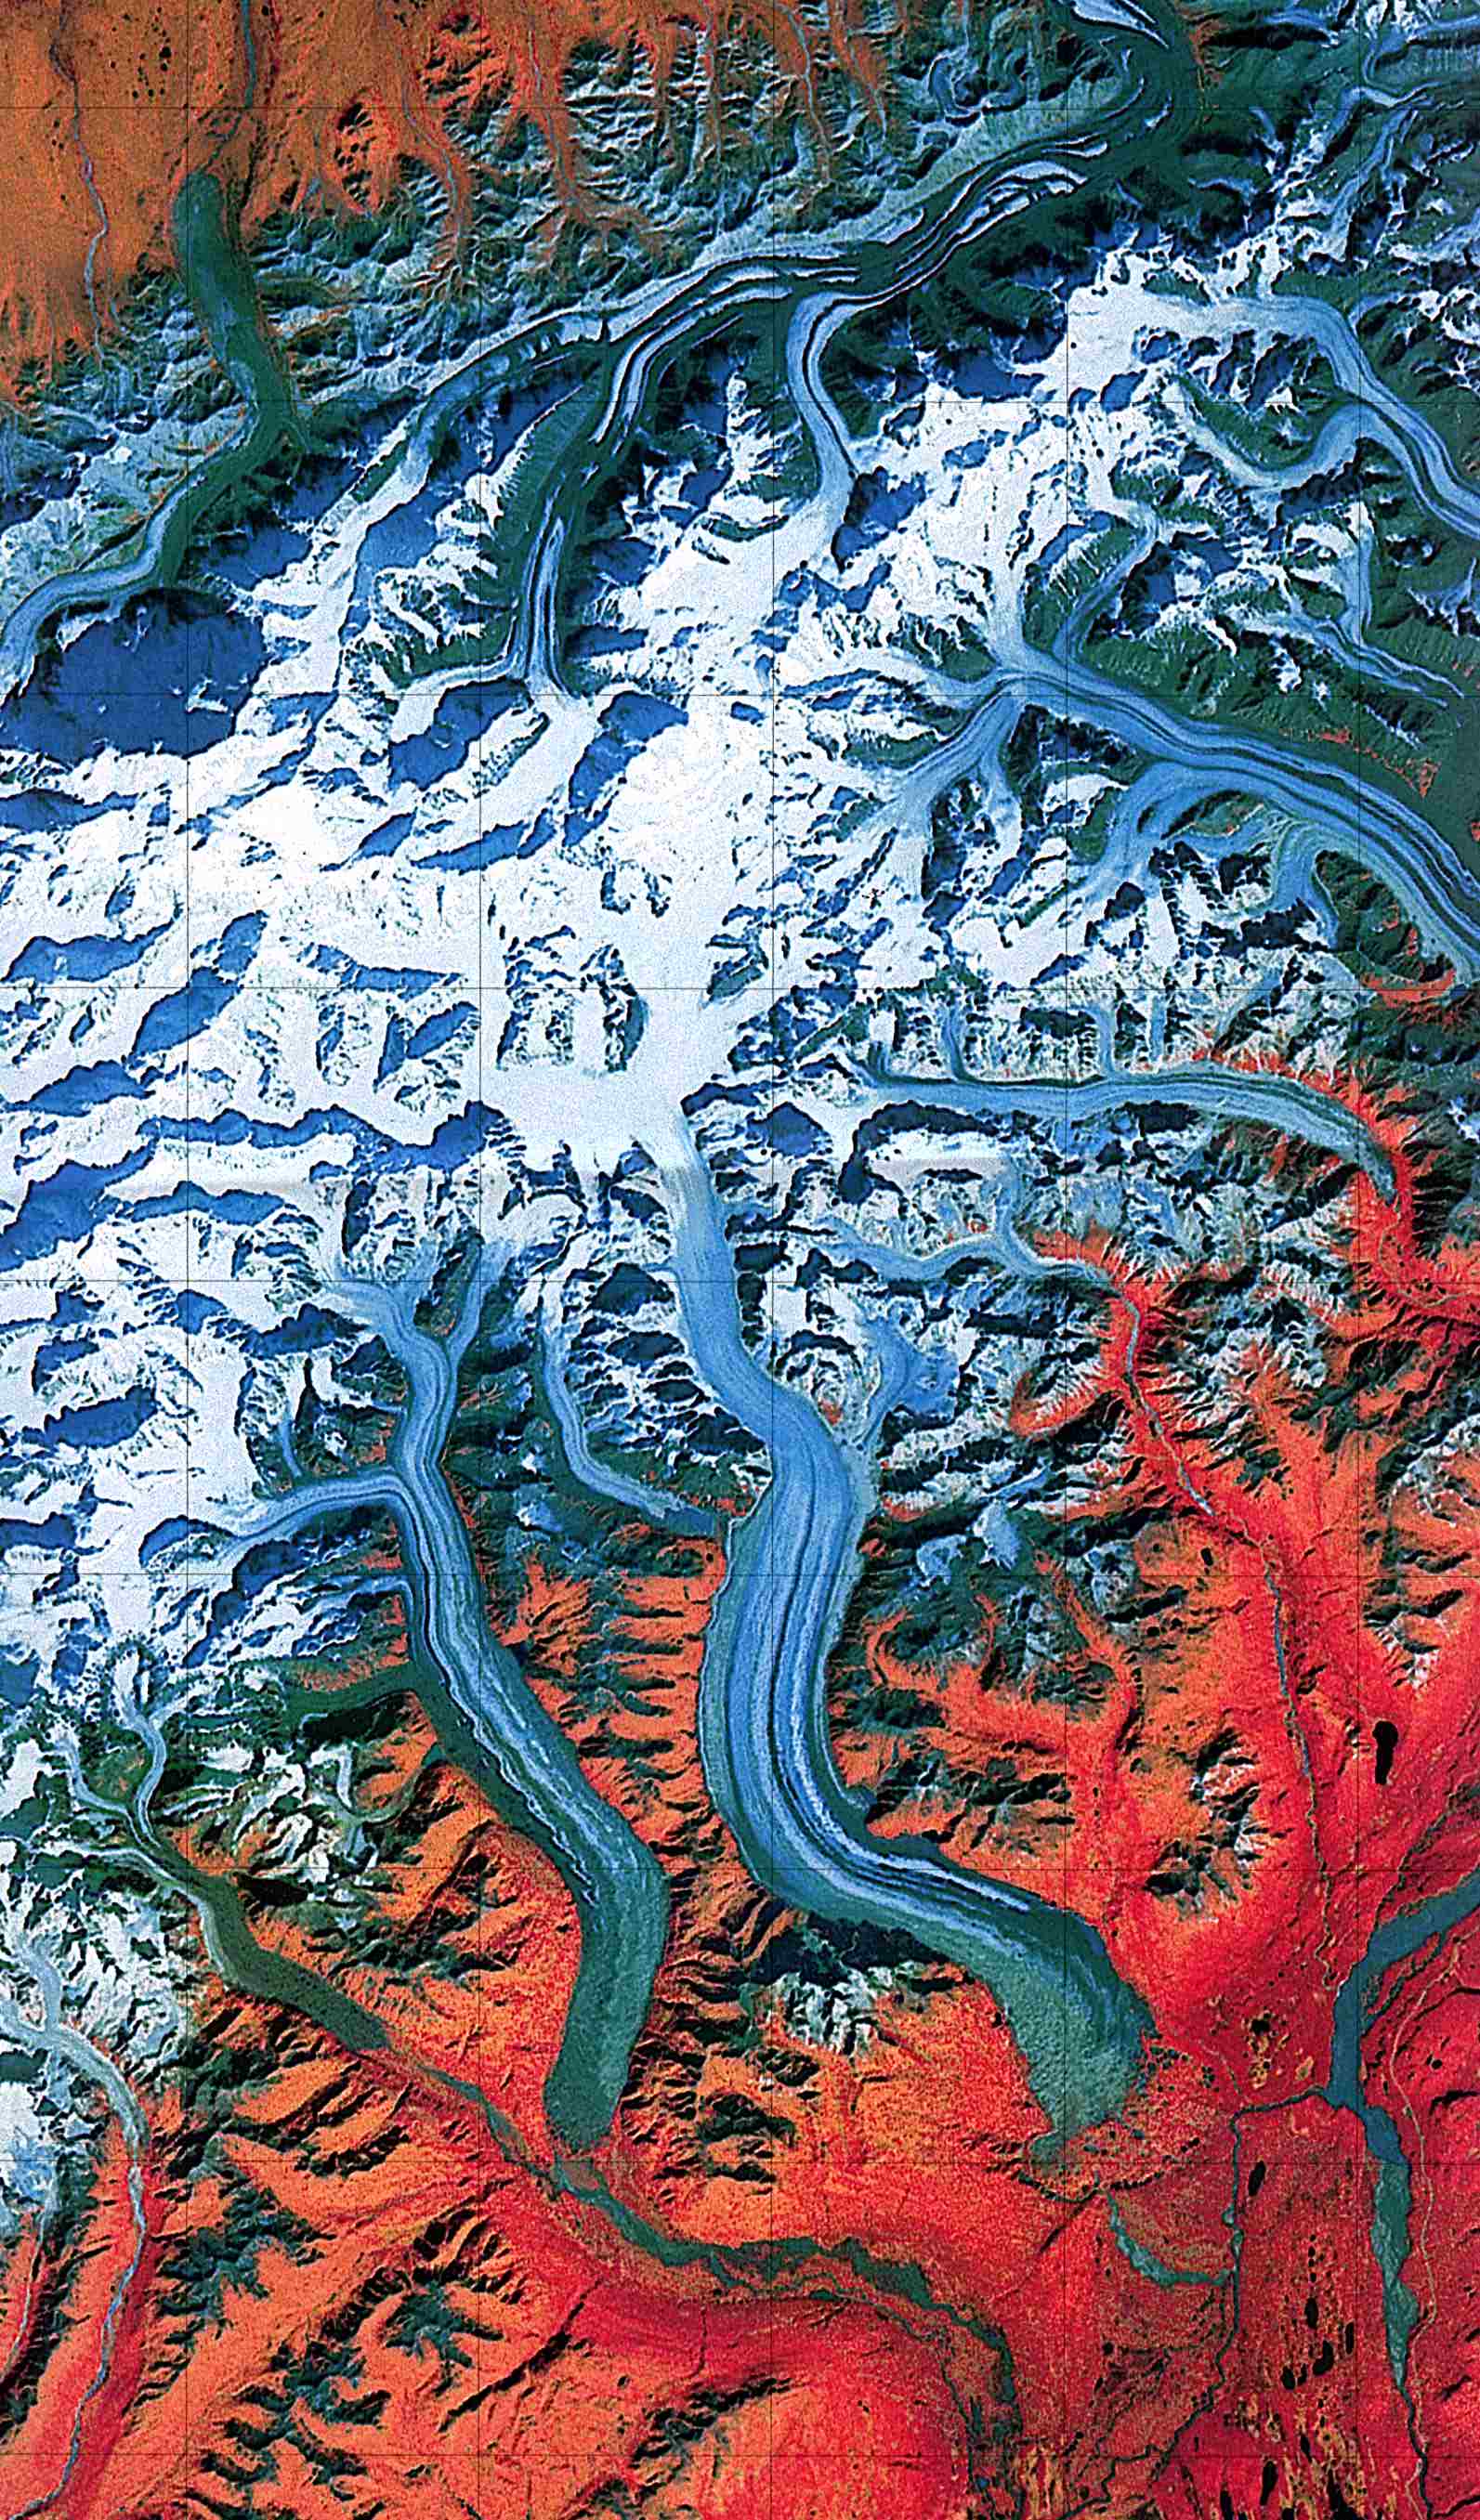  Maps of United States National Parks, Monuments and Historic Sites Denali National Park and Preserve [Alaska] (Landsat Image) 1:250,000 U.S.G.S. 1984 (459K) 